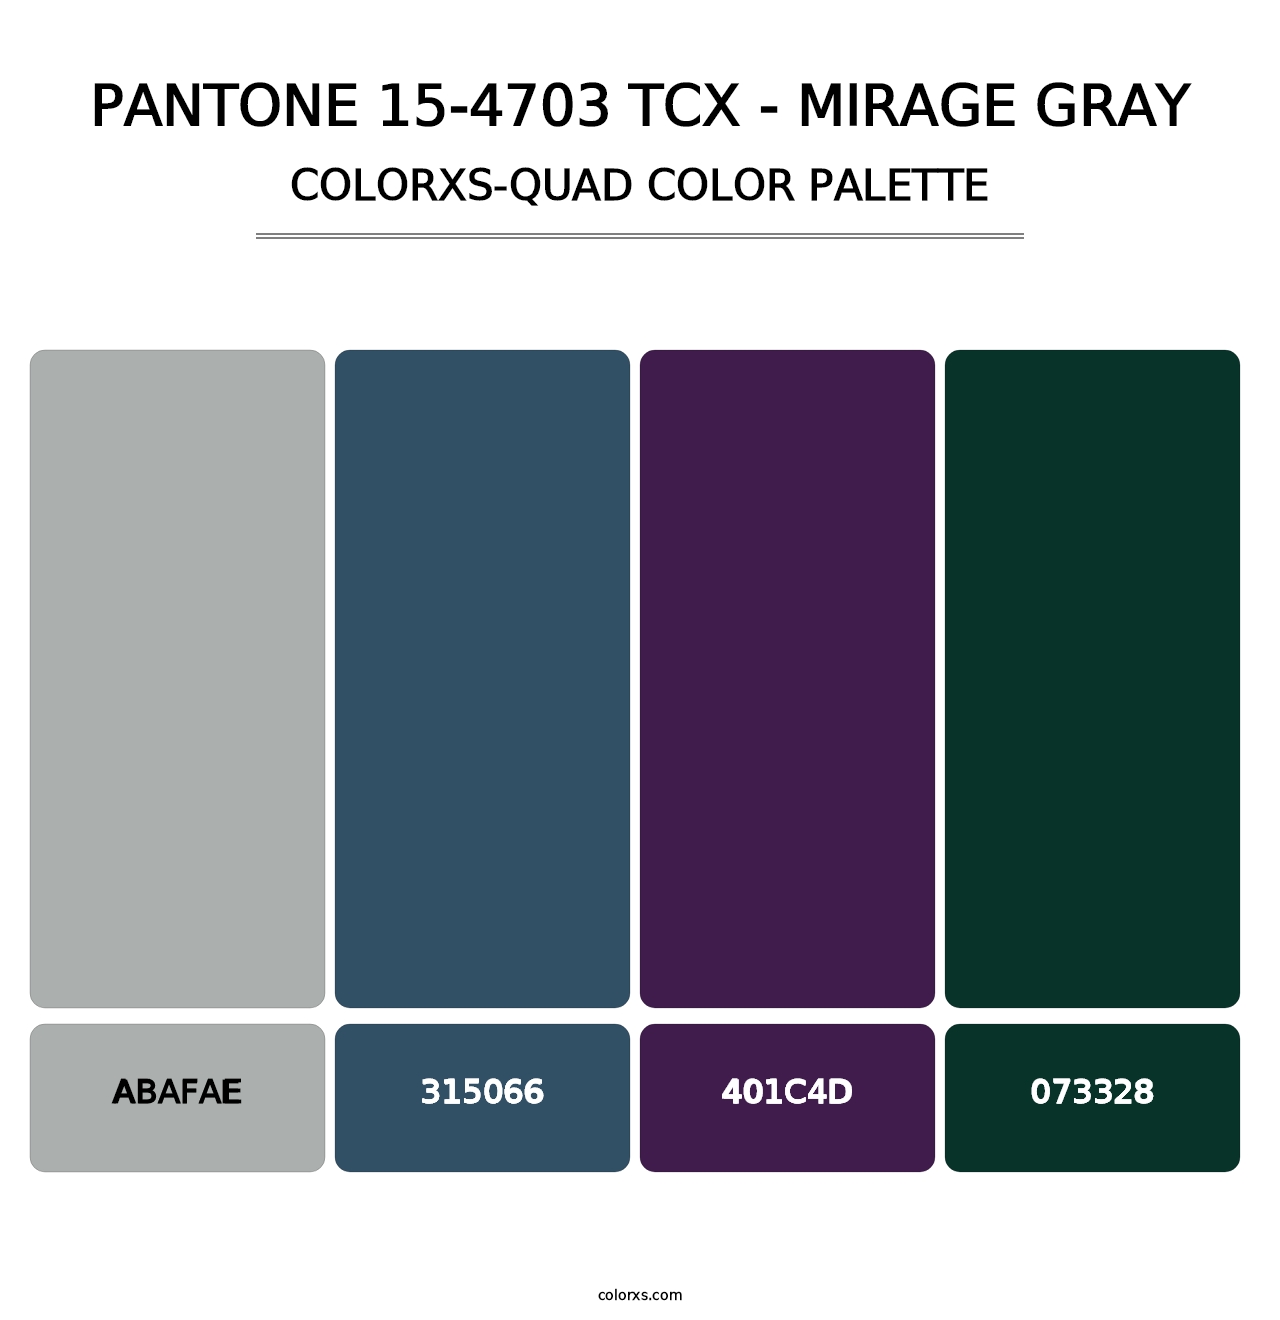 PANTONE 15-4703 TCX - Mirage Gray - Colorxs Quad Palette